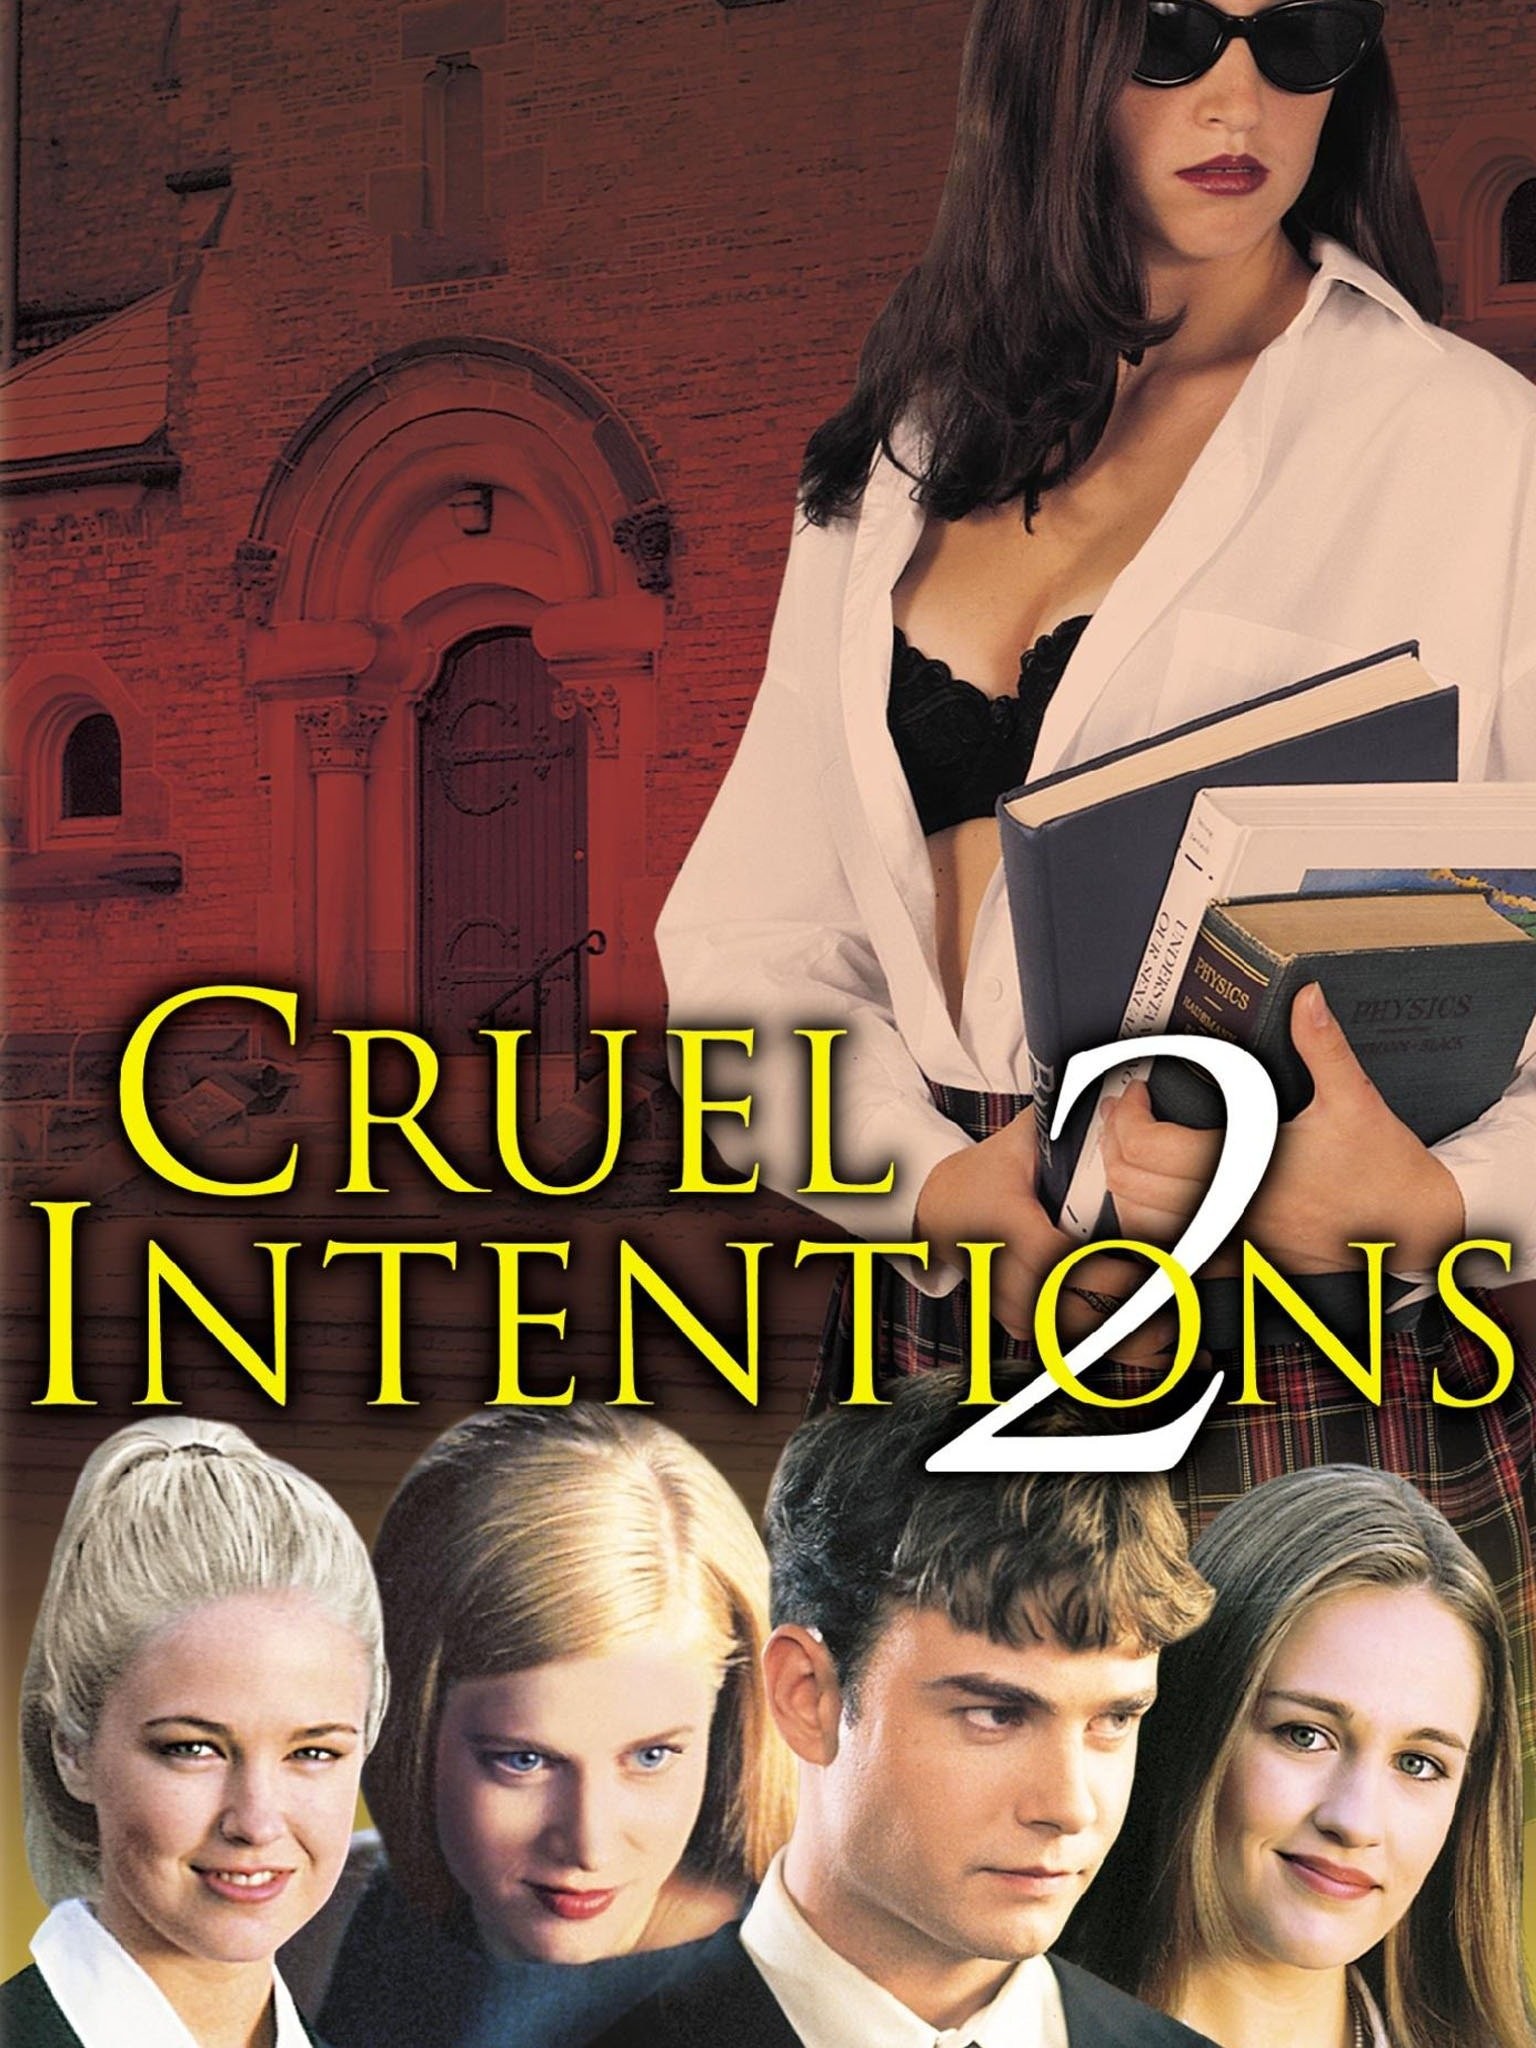 Best of Cruel intentions movie online